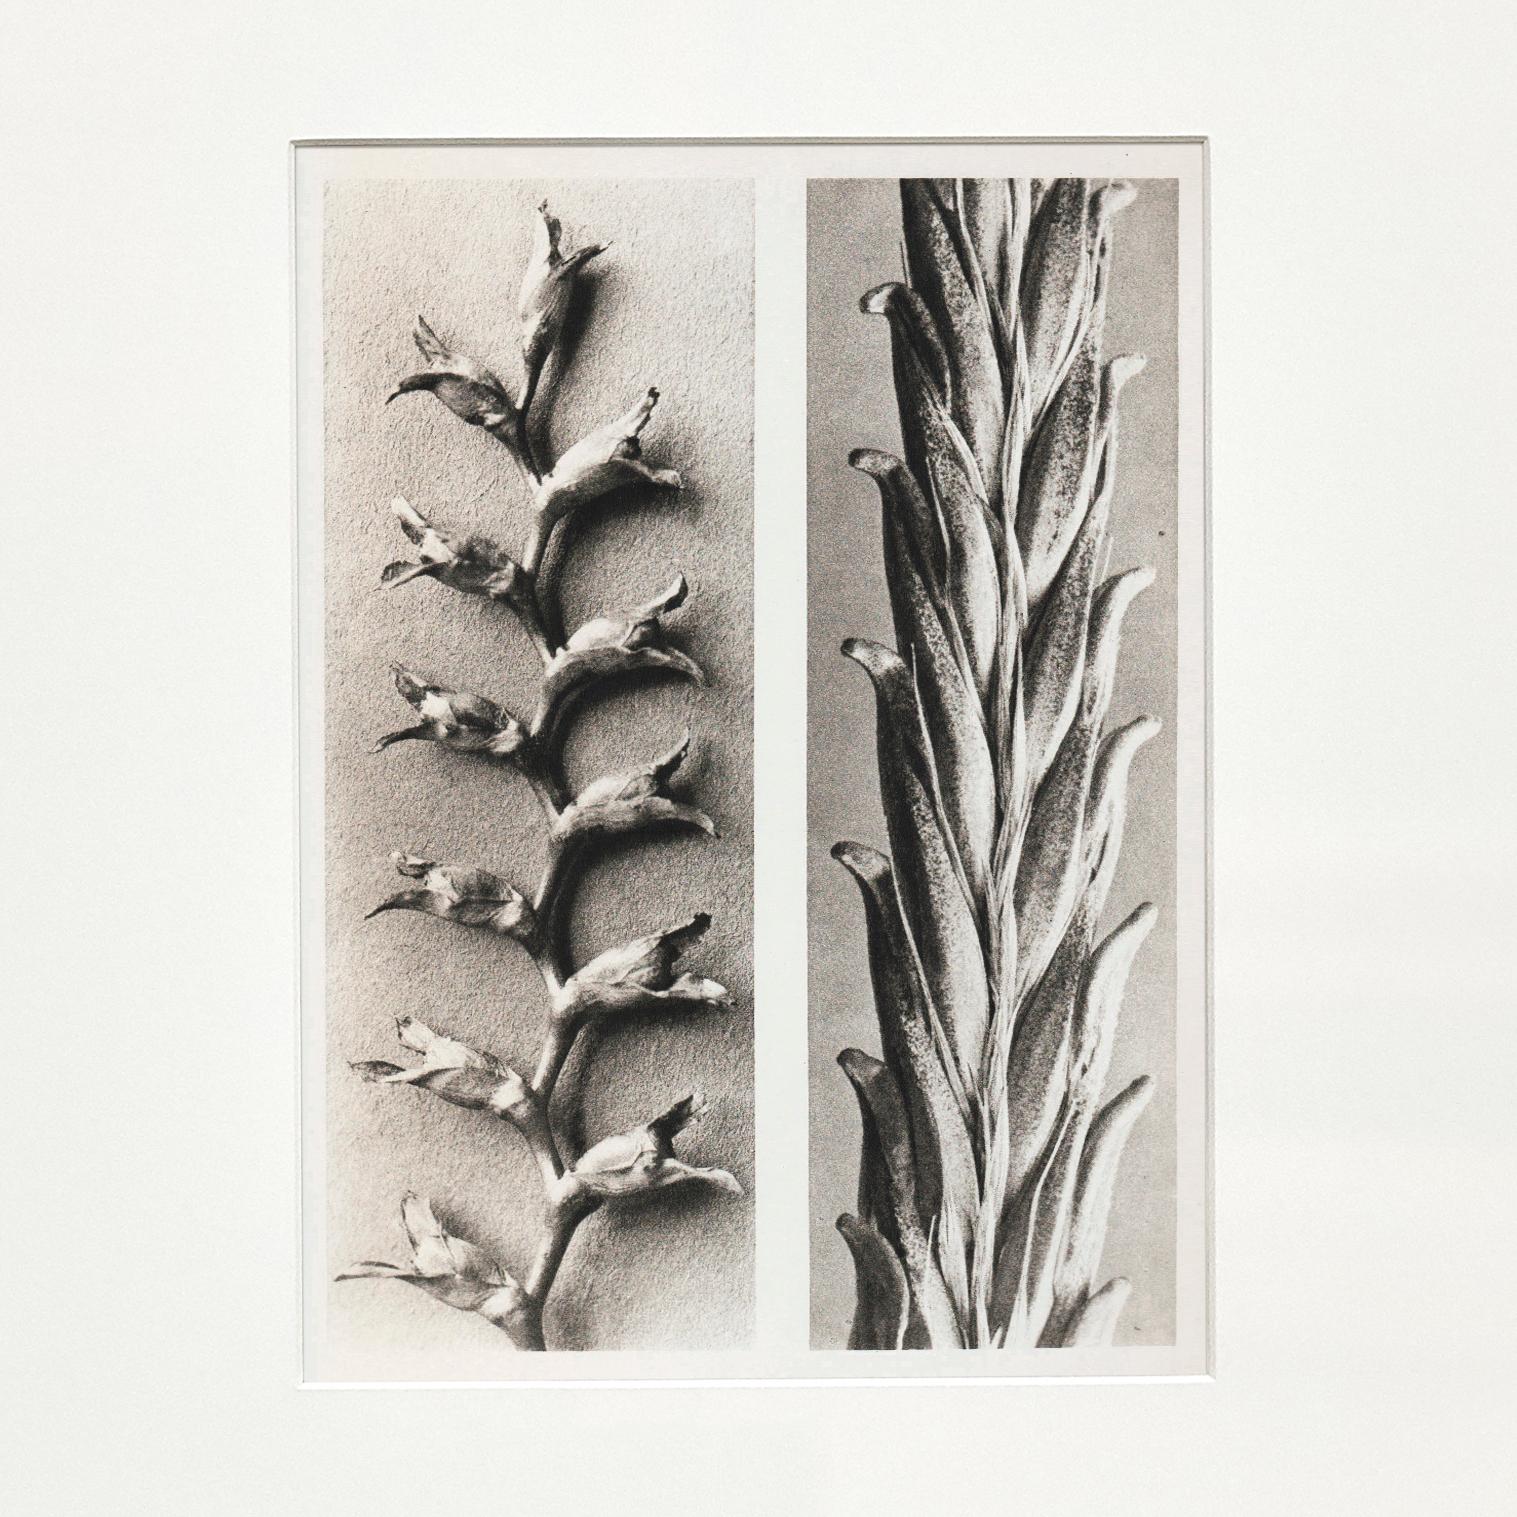 Karl Blossfeldt Photogravure from the edition of the book 'Wunder in der Natur' in 1942.

Photography number 22. Tritonia crocosmüflora (Iridaceae). Samenrispe in 6 facher Vergrößerung.' Triticum vulgare. Weizen in 6 facher Vergrößerung.

In